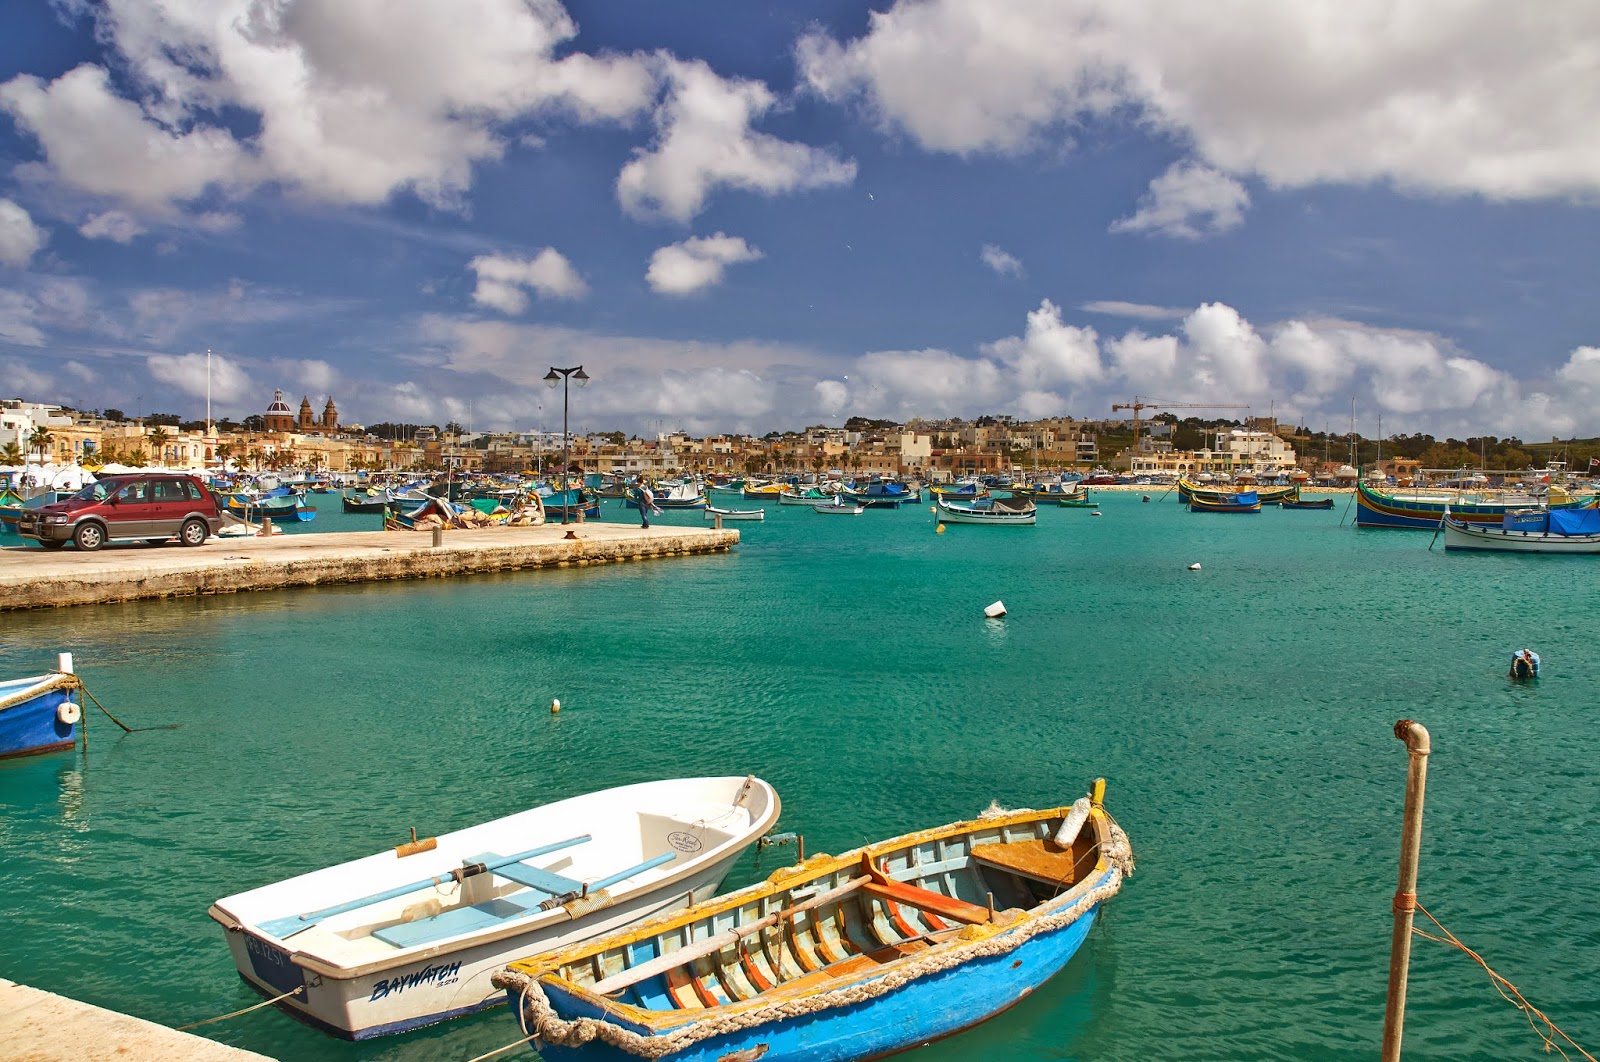 łódki Luzzu na Malcie gdzie je można zobaczyć?